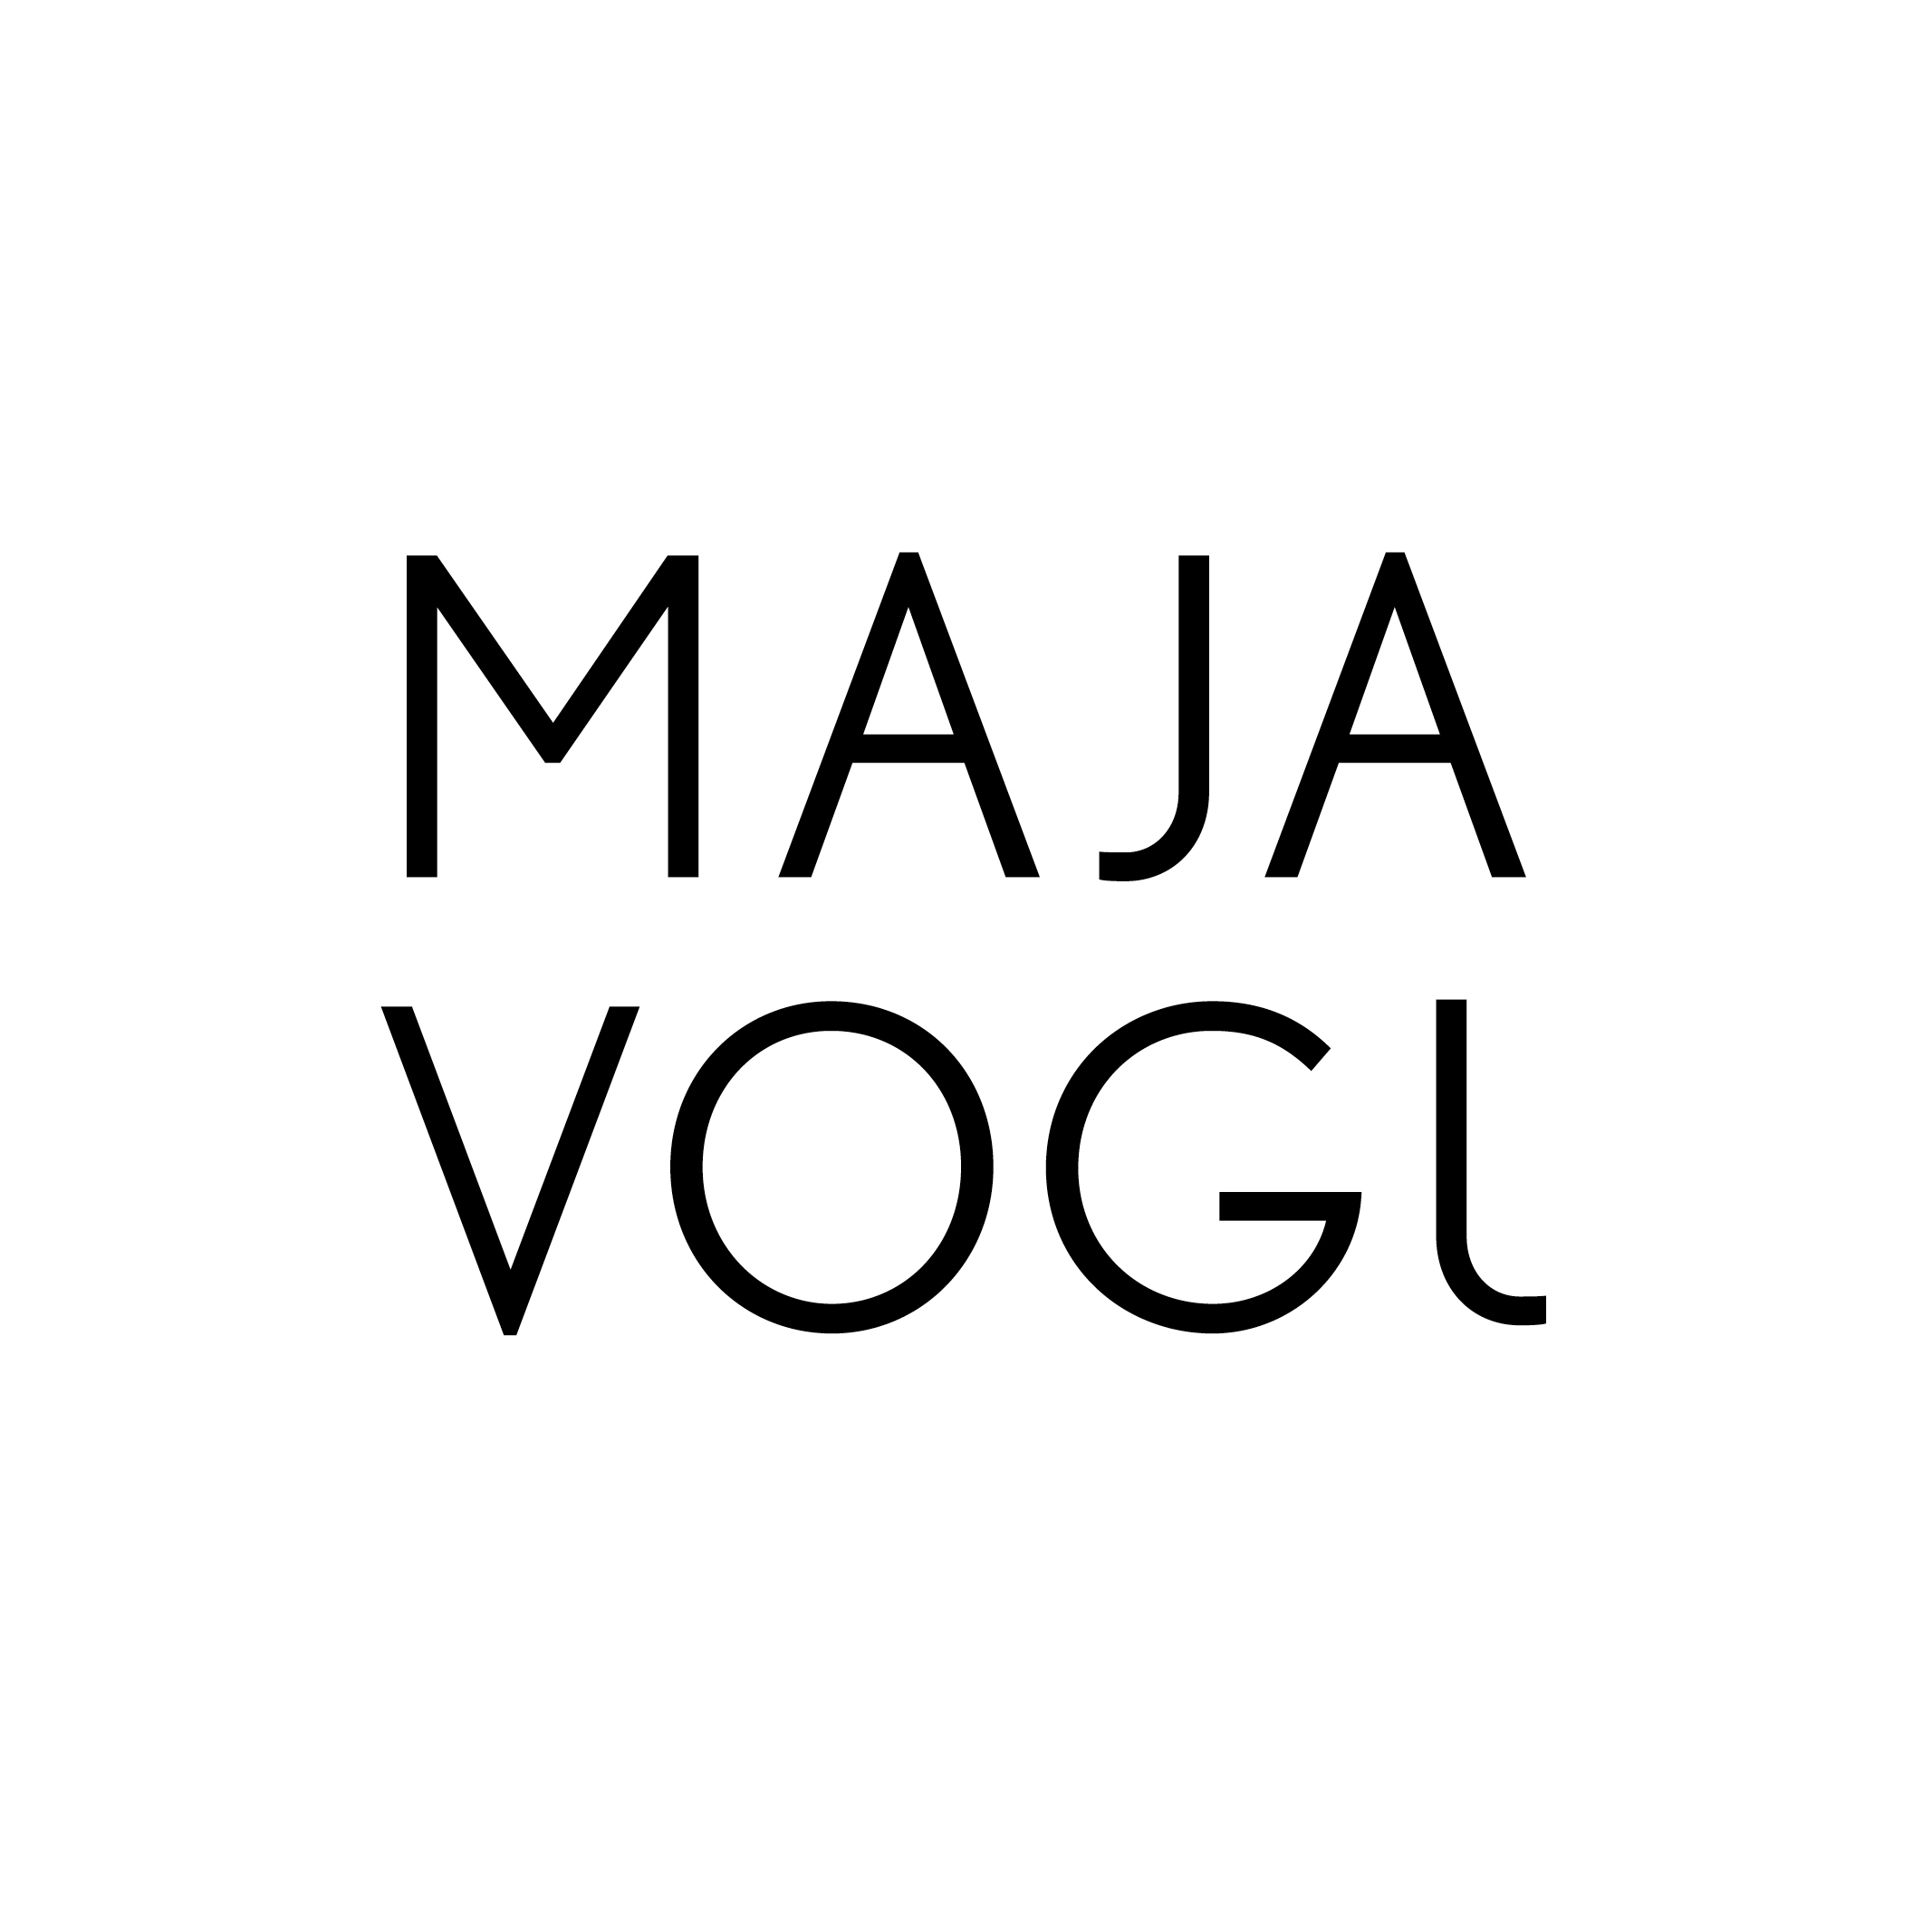 Maja Vogl